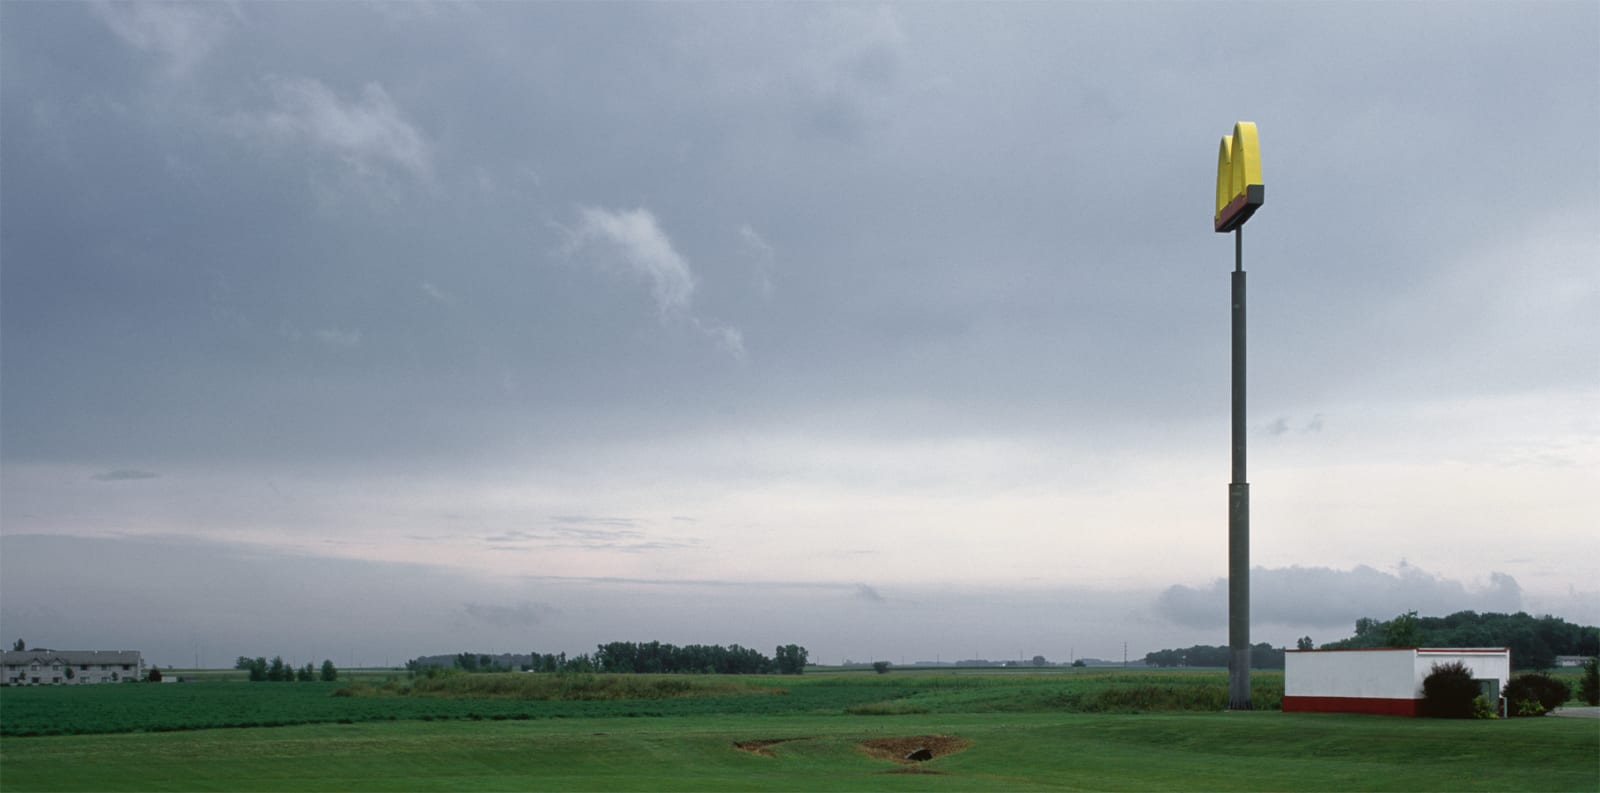 Jeff Brouws, Franchised Landscape #18, 2004